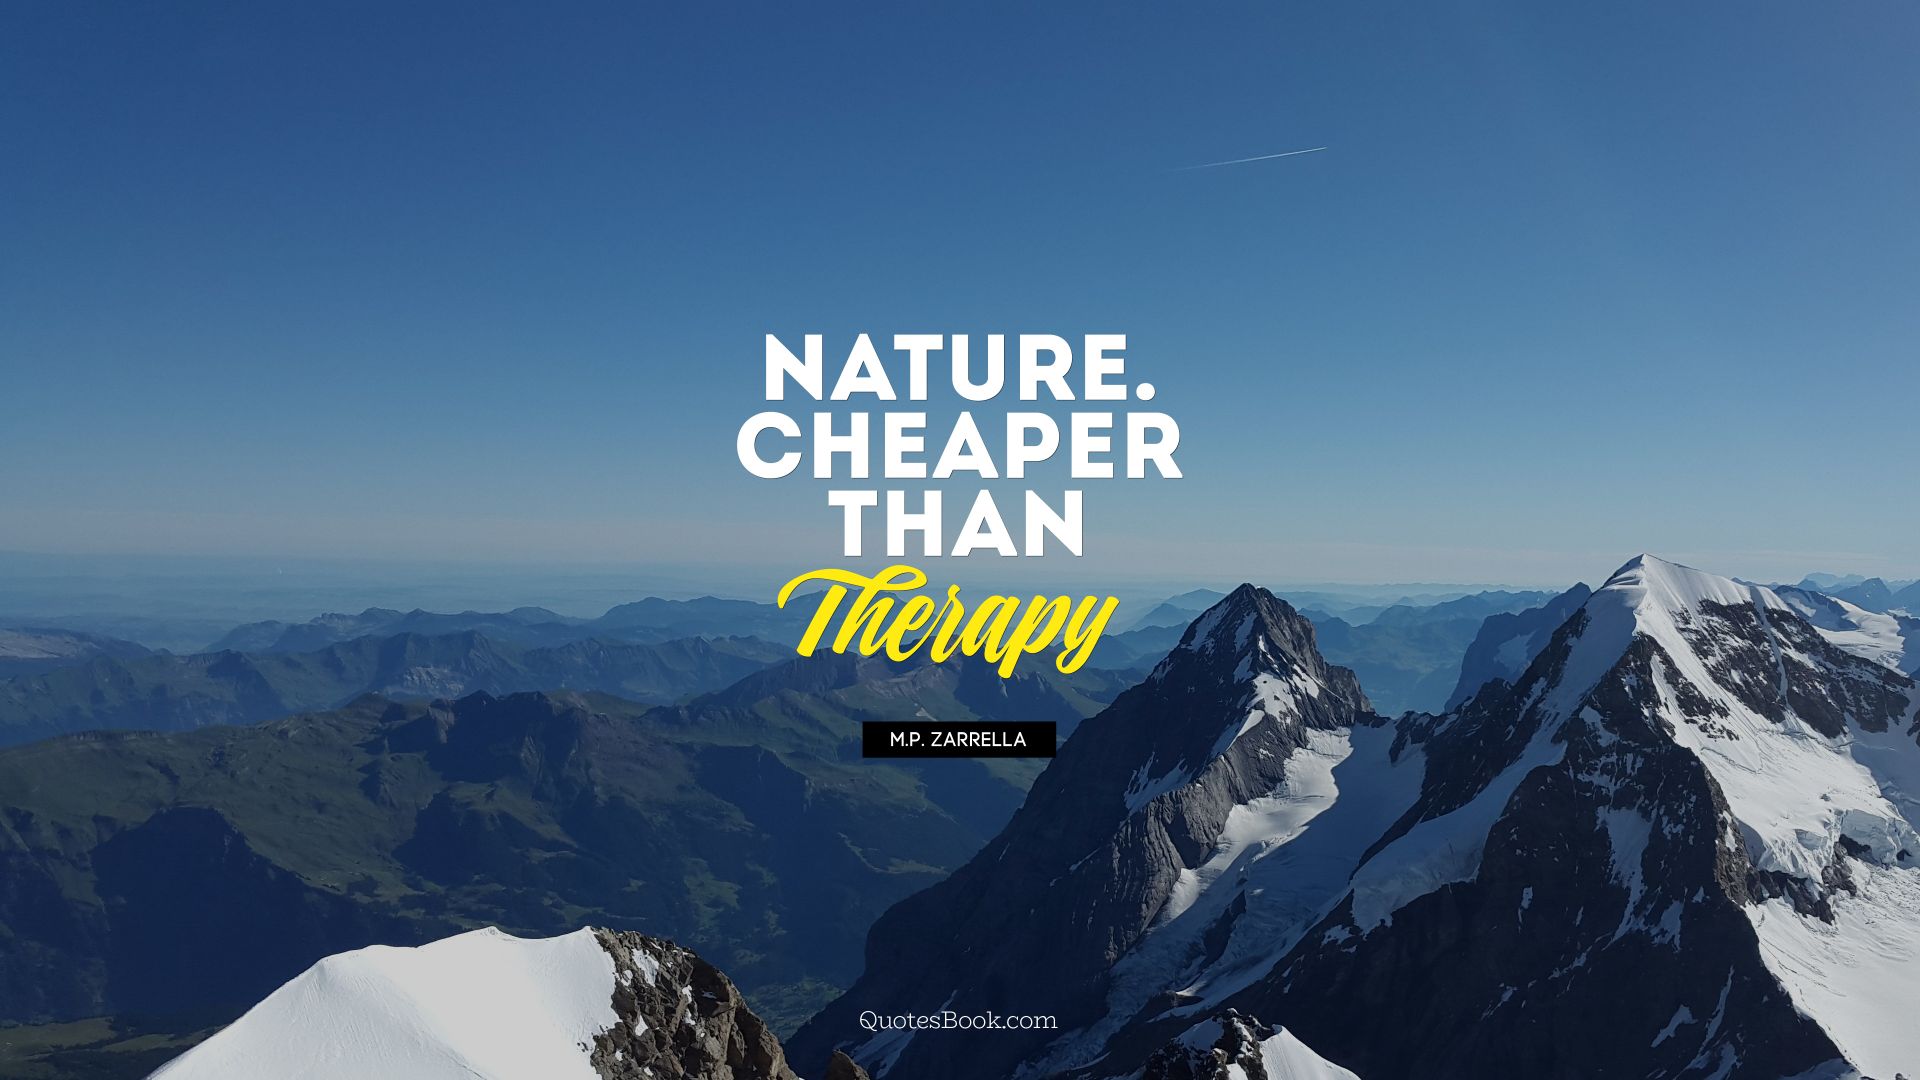 Nature. Cheaper than therapy. - Quote by M.P. Zarrella